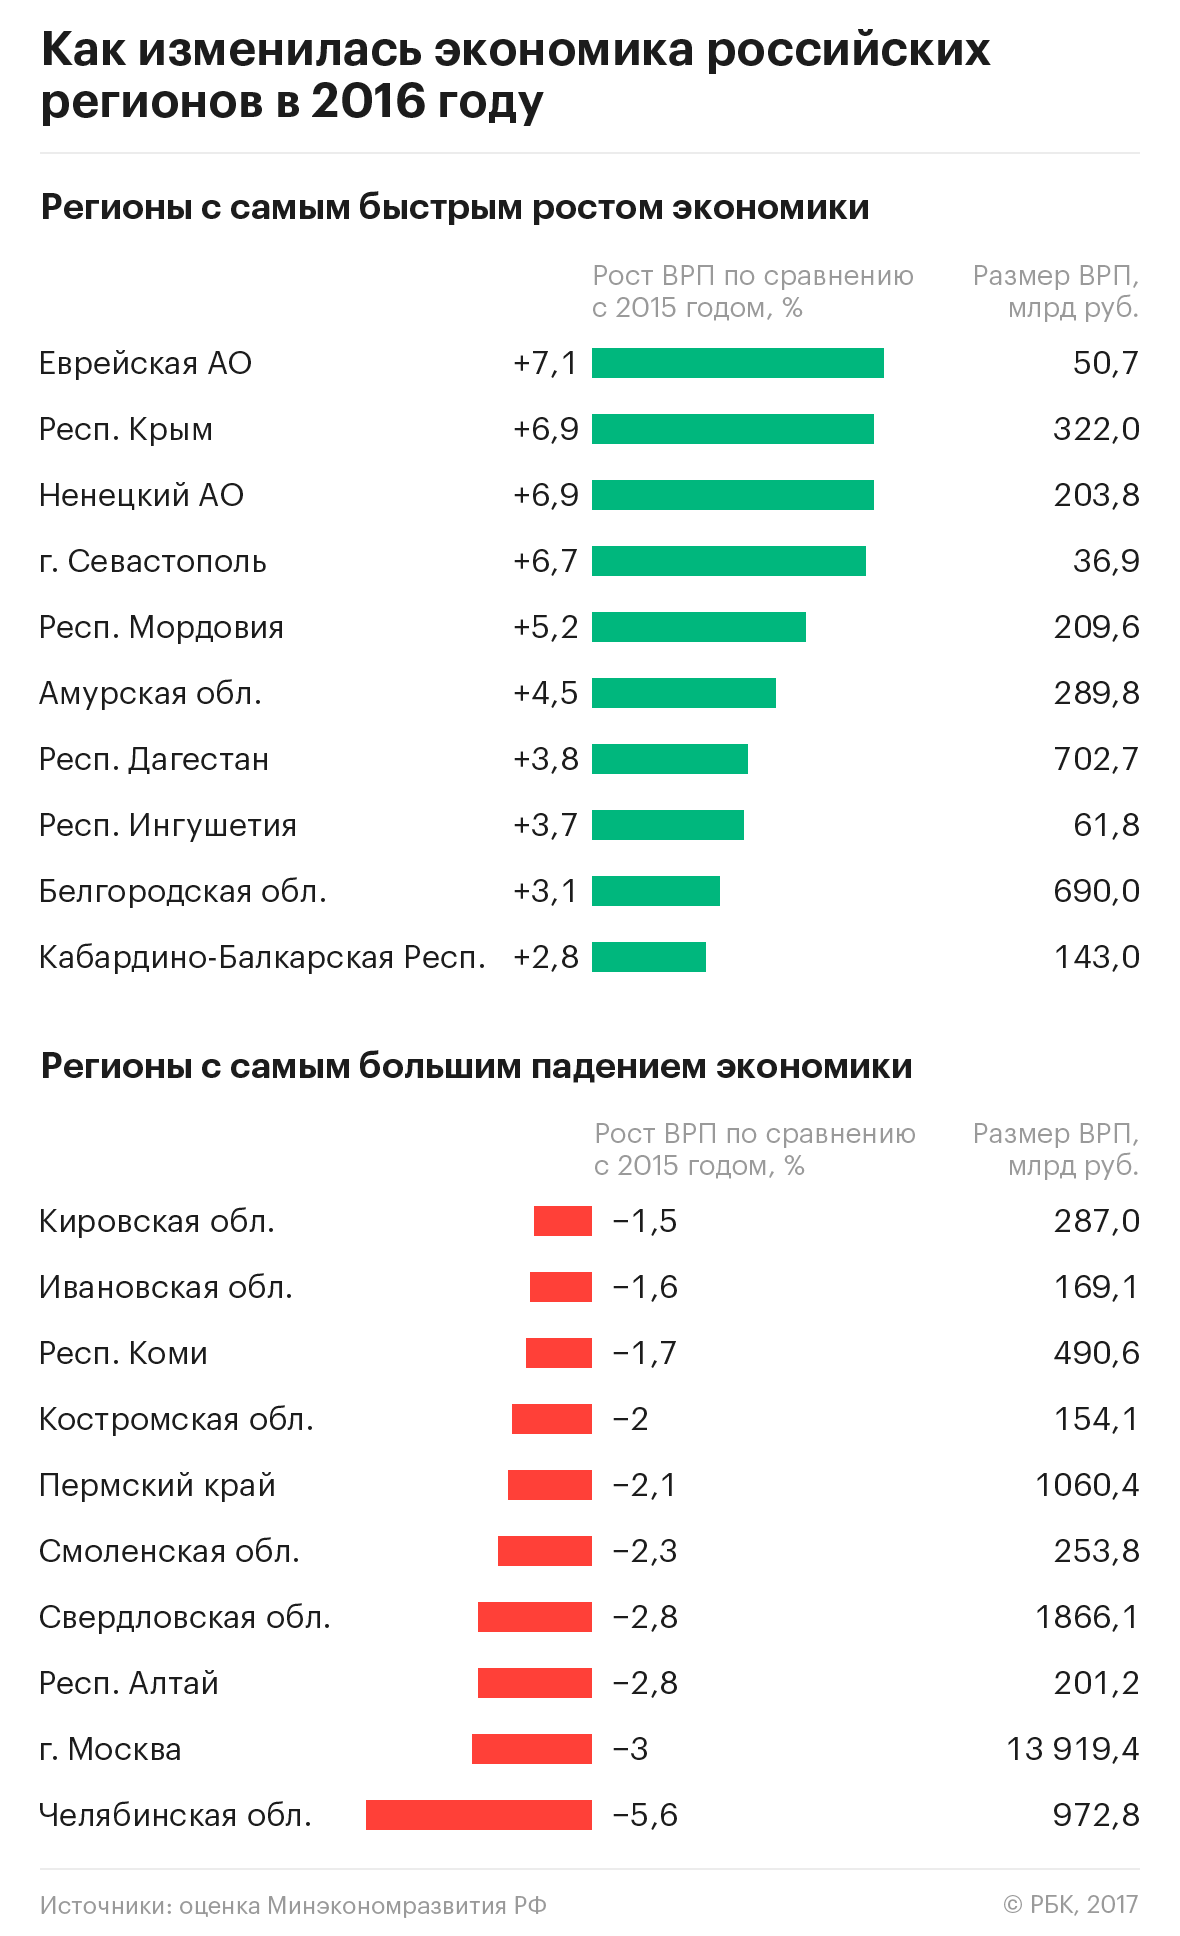 Большая часть российских регионов проигнорировала рецессию